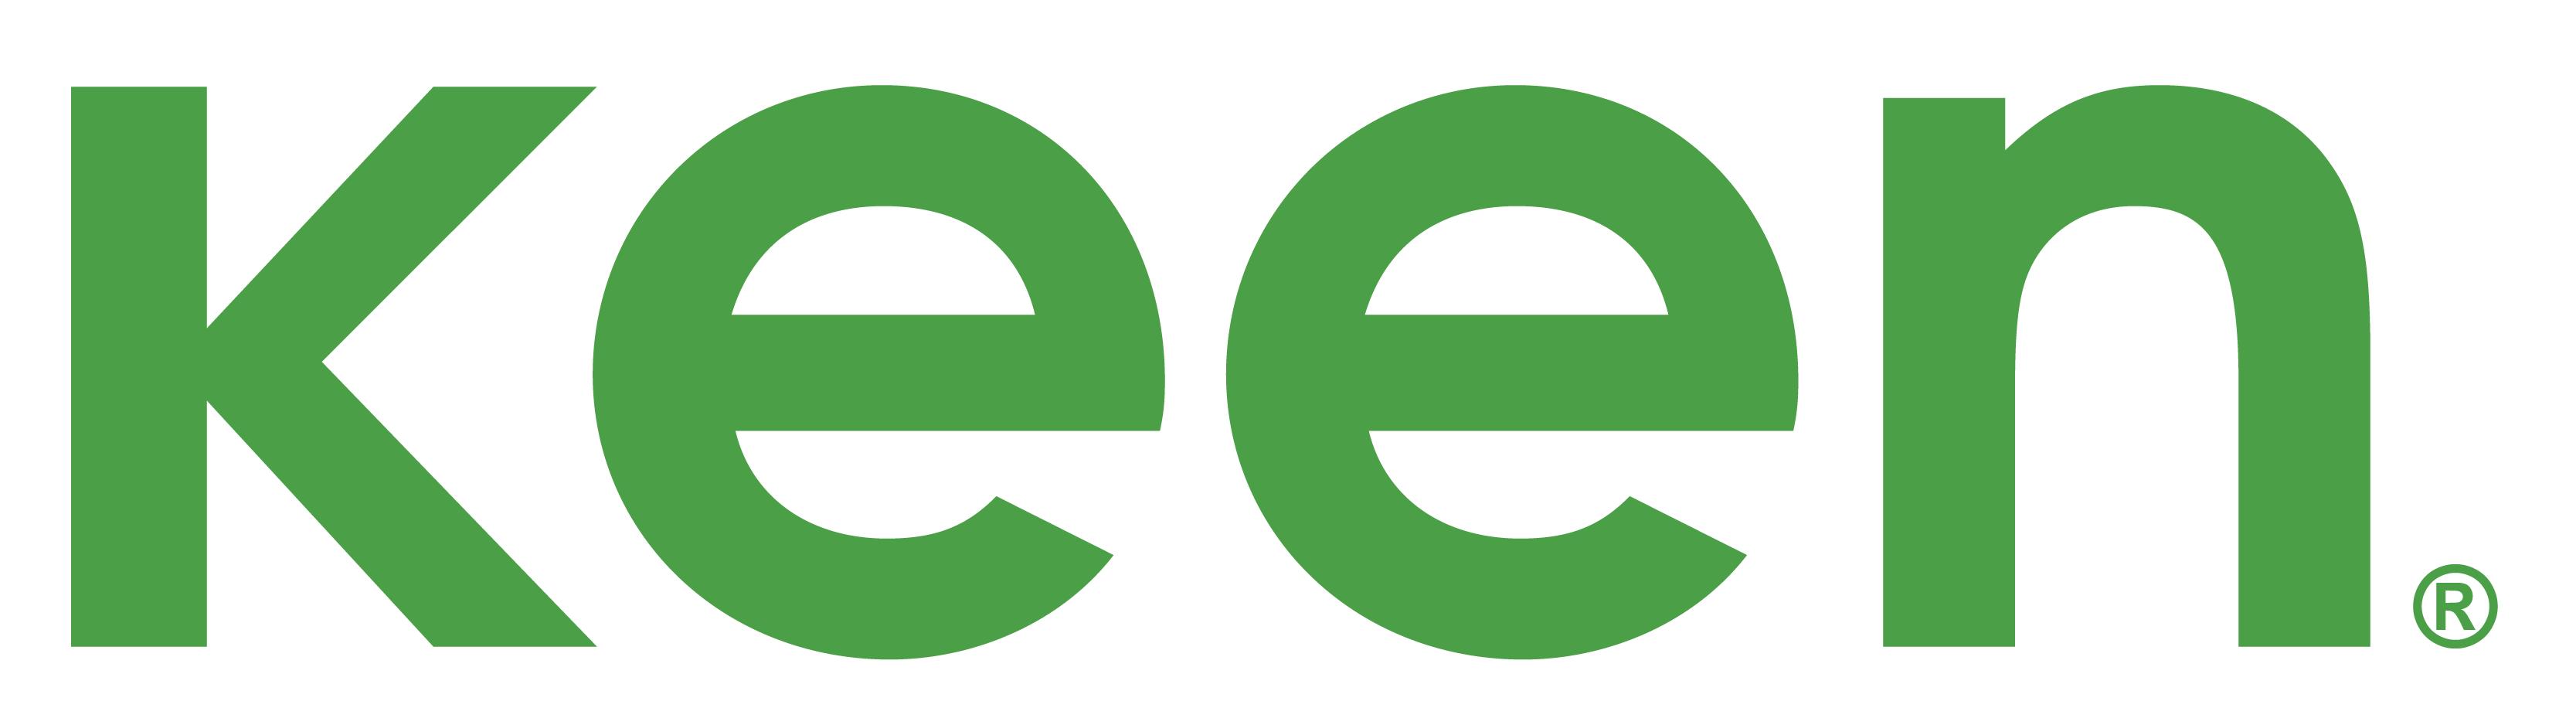 keen-only_logo_Green-1